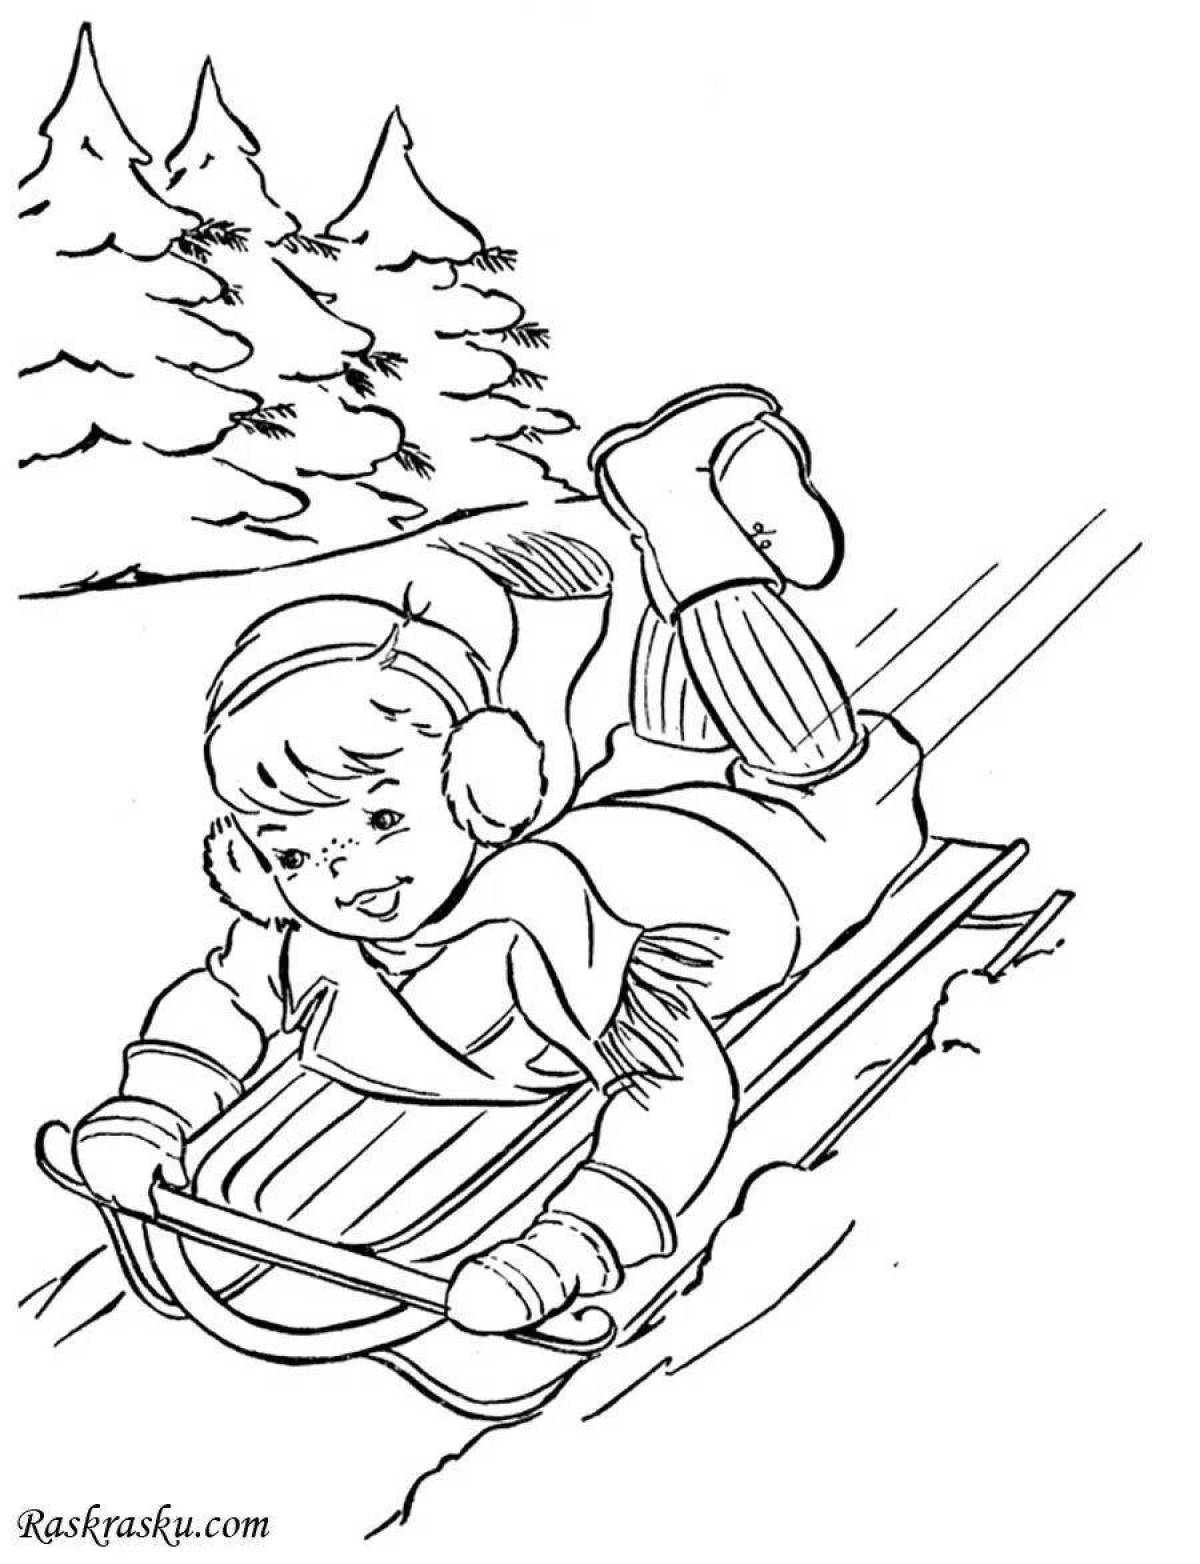 Ребенок катается на санках #1